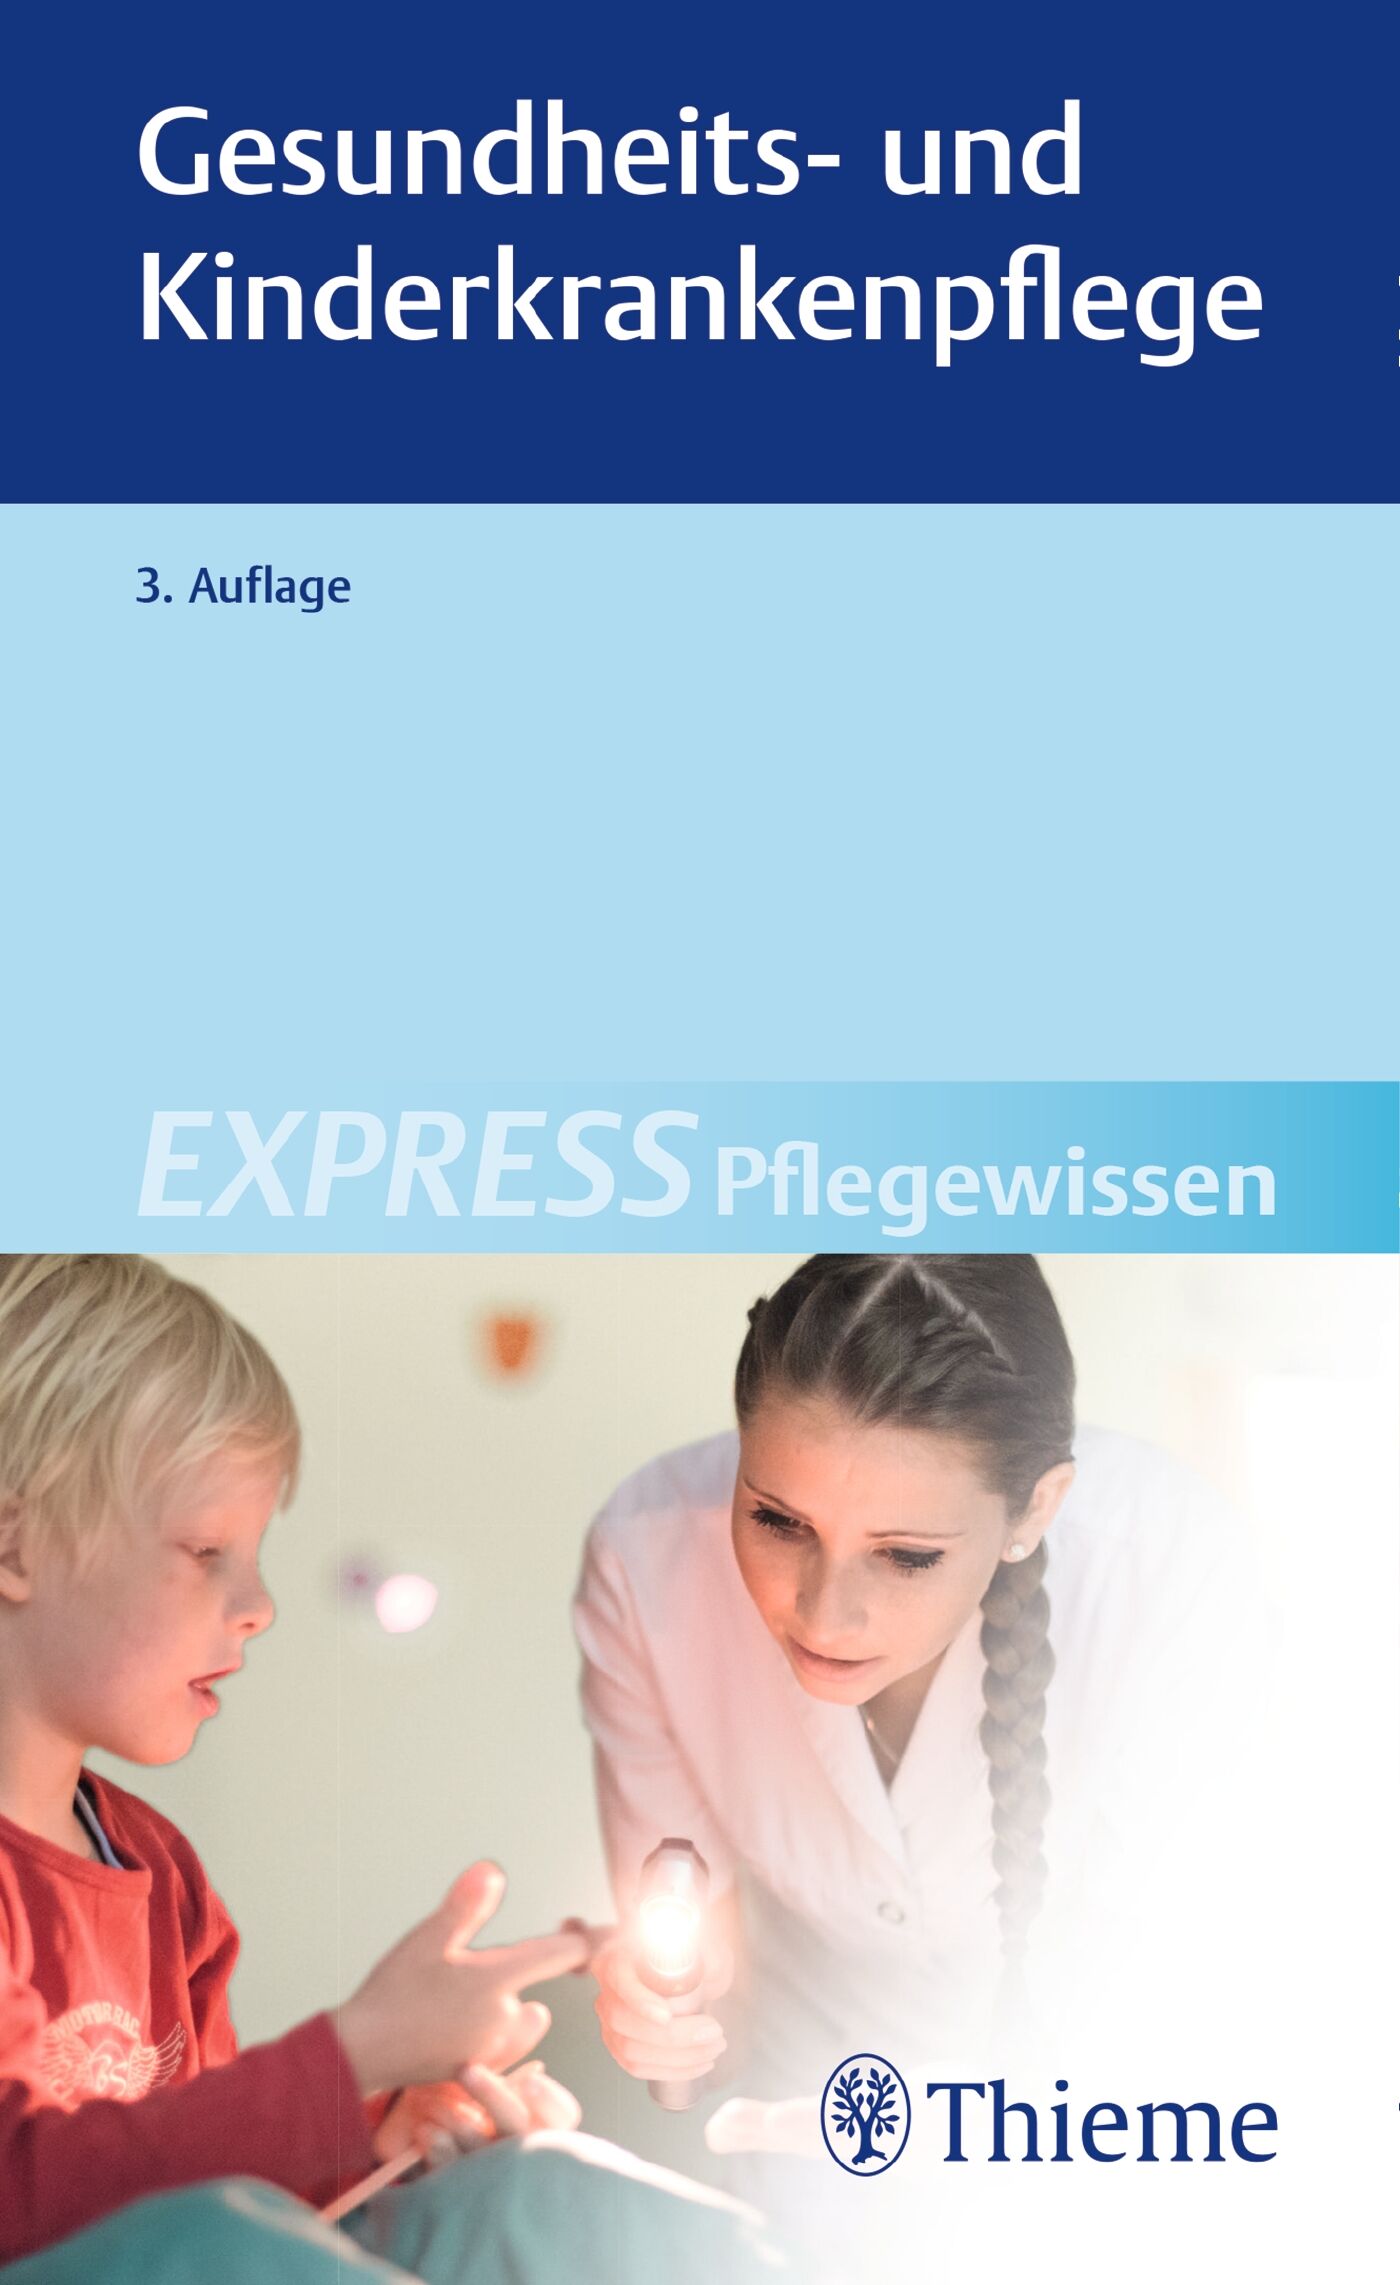 EXPRESS Pflegewissen Gesundheits- und Kinderkrankenpflege, 9783132419988